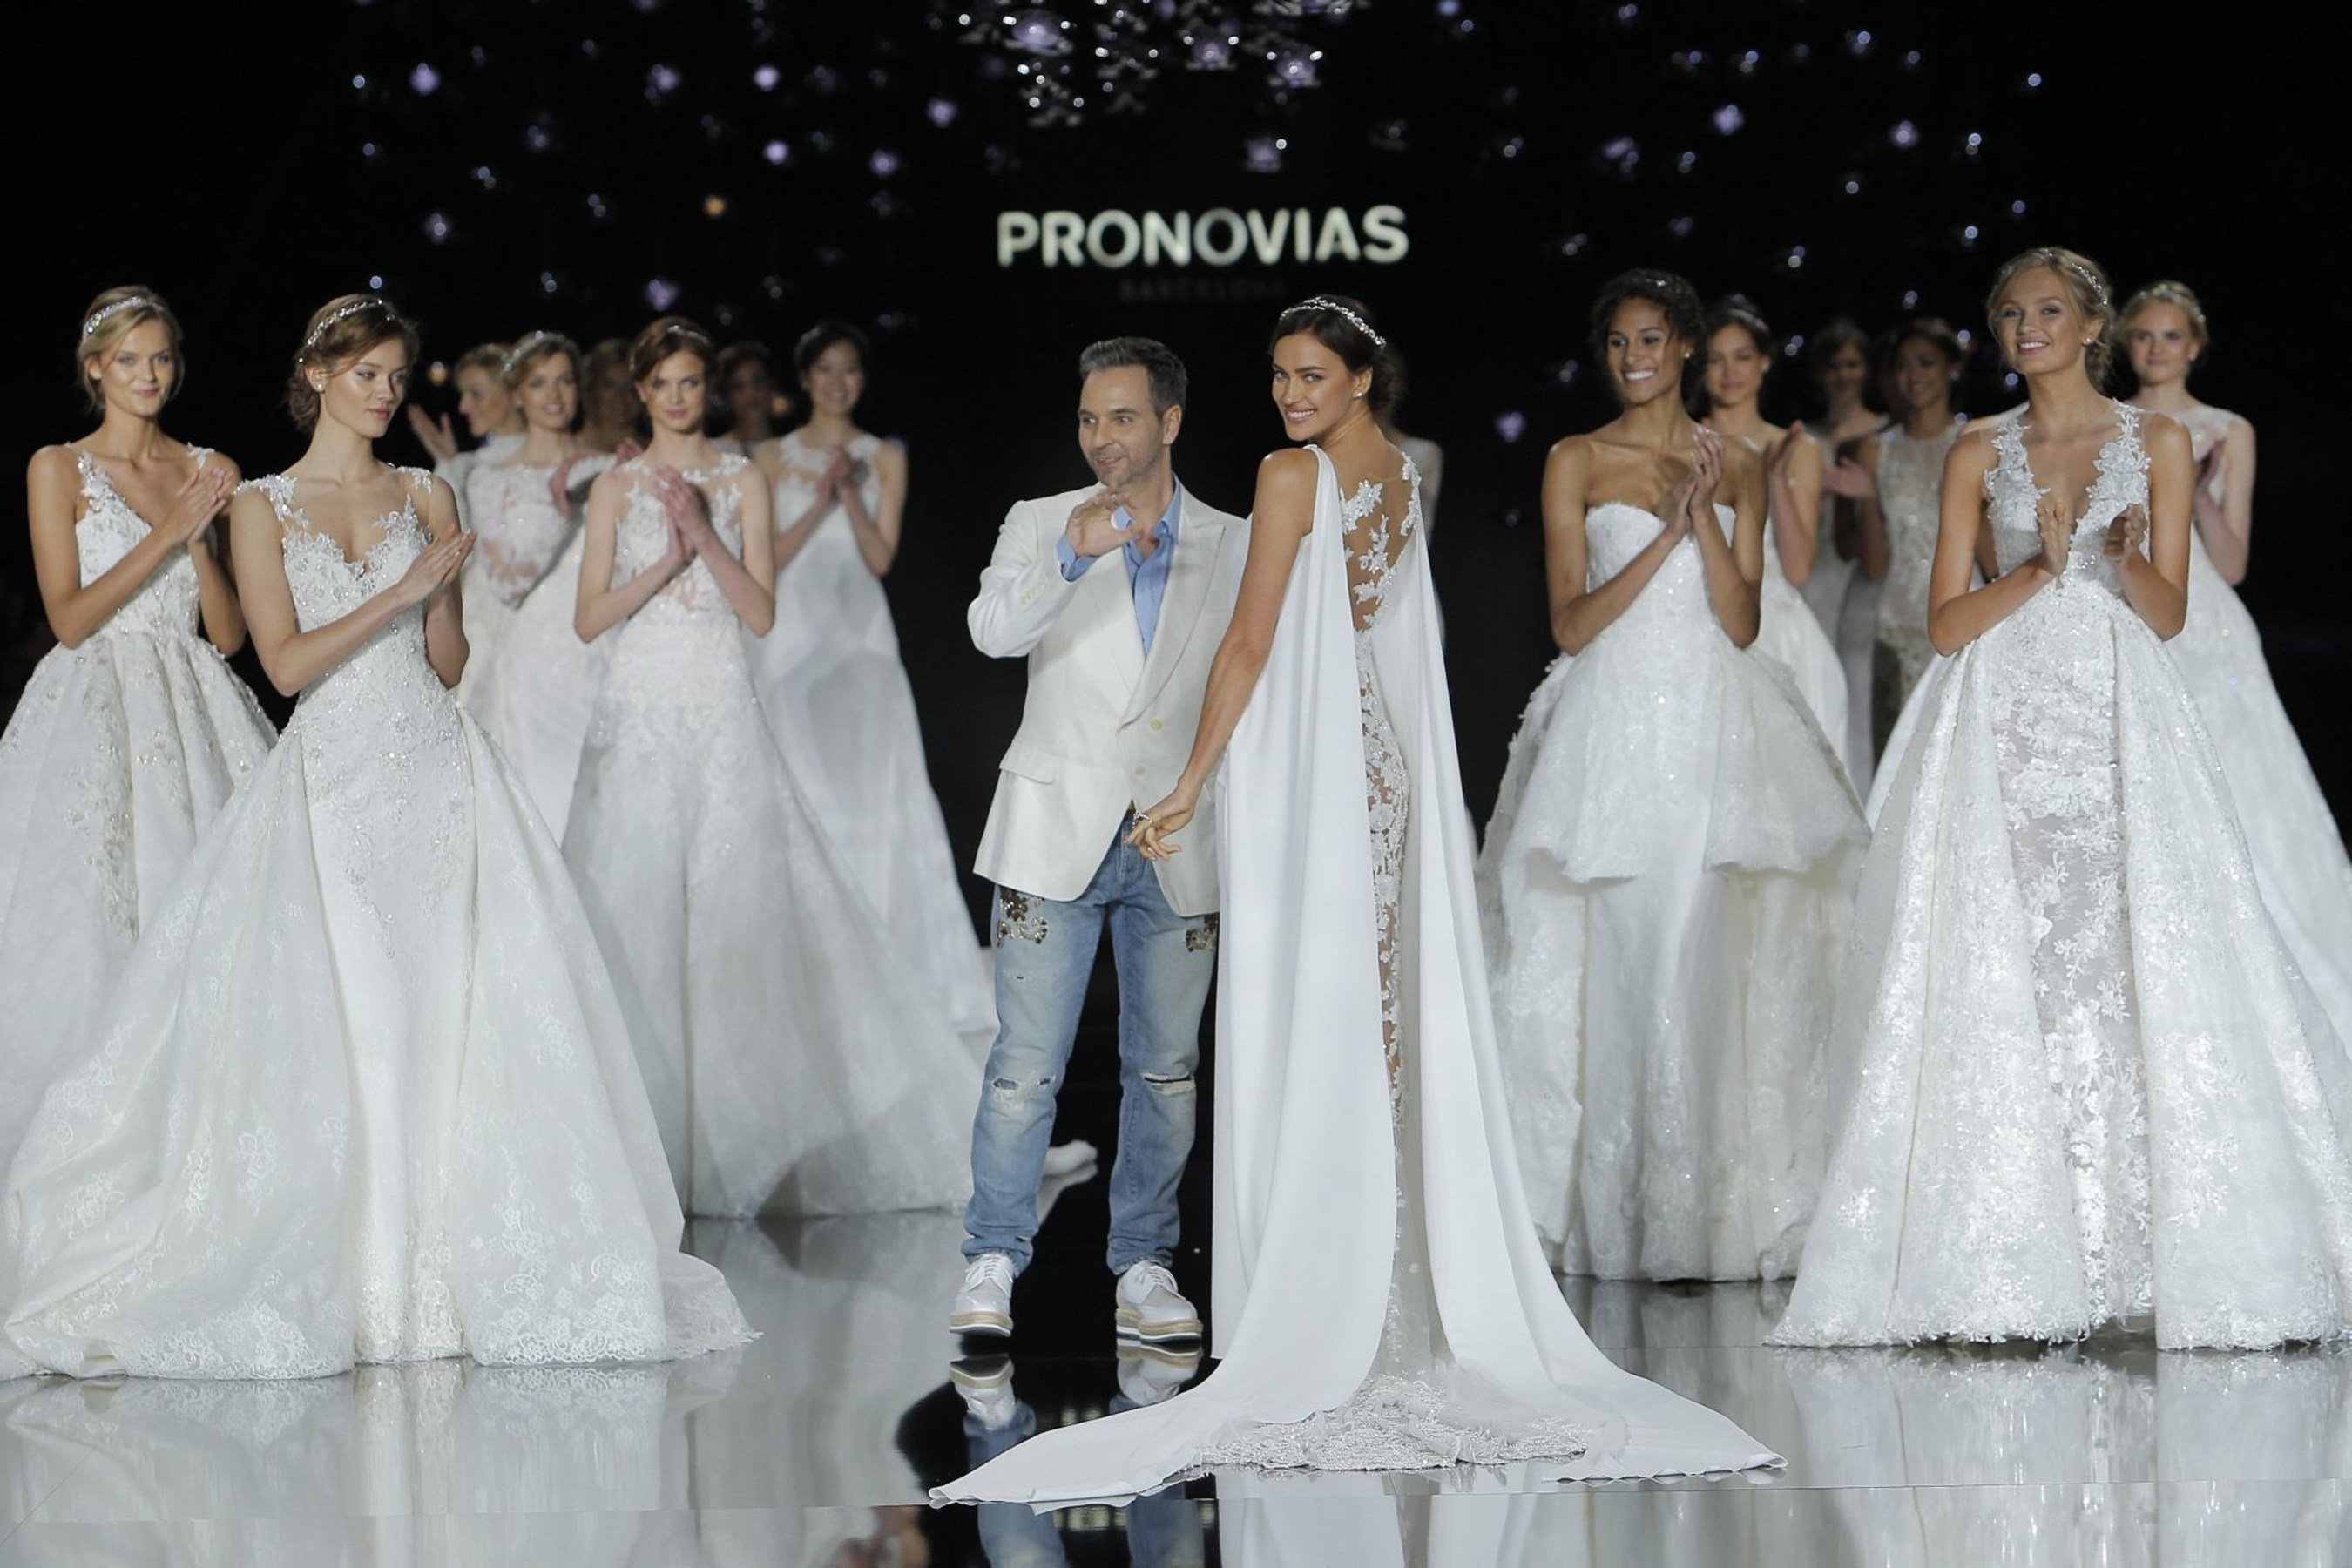 FINALE Pronovias Fashion Show. (PRNewsFoto/PRONOVIAS)